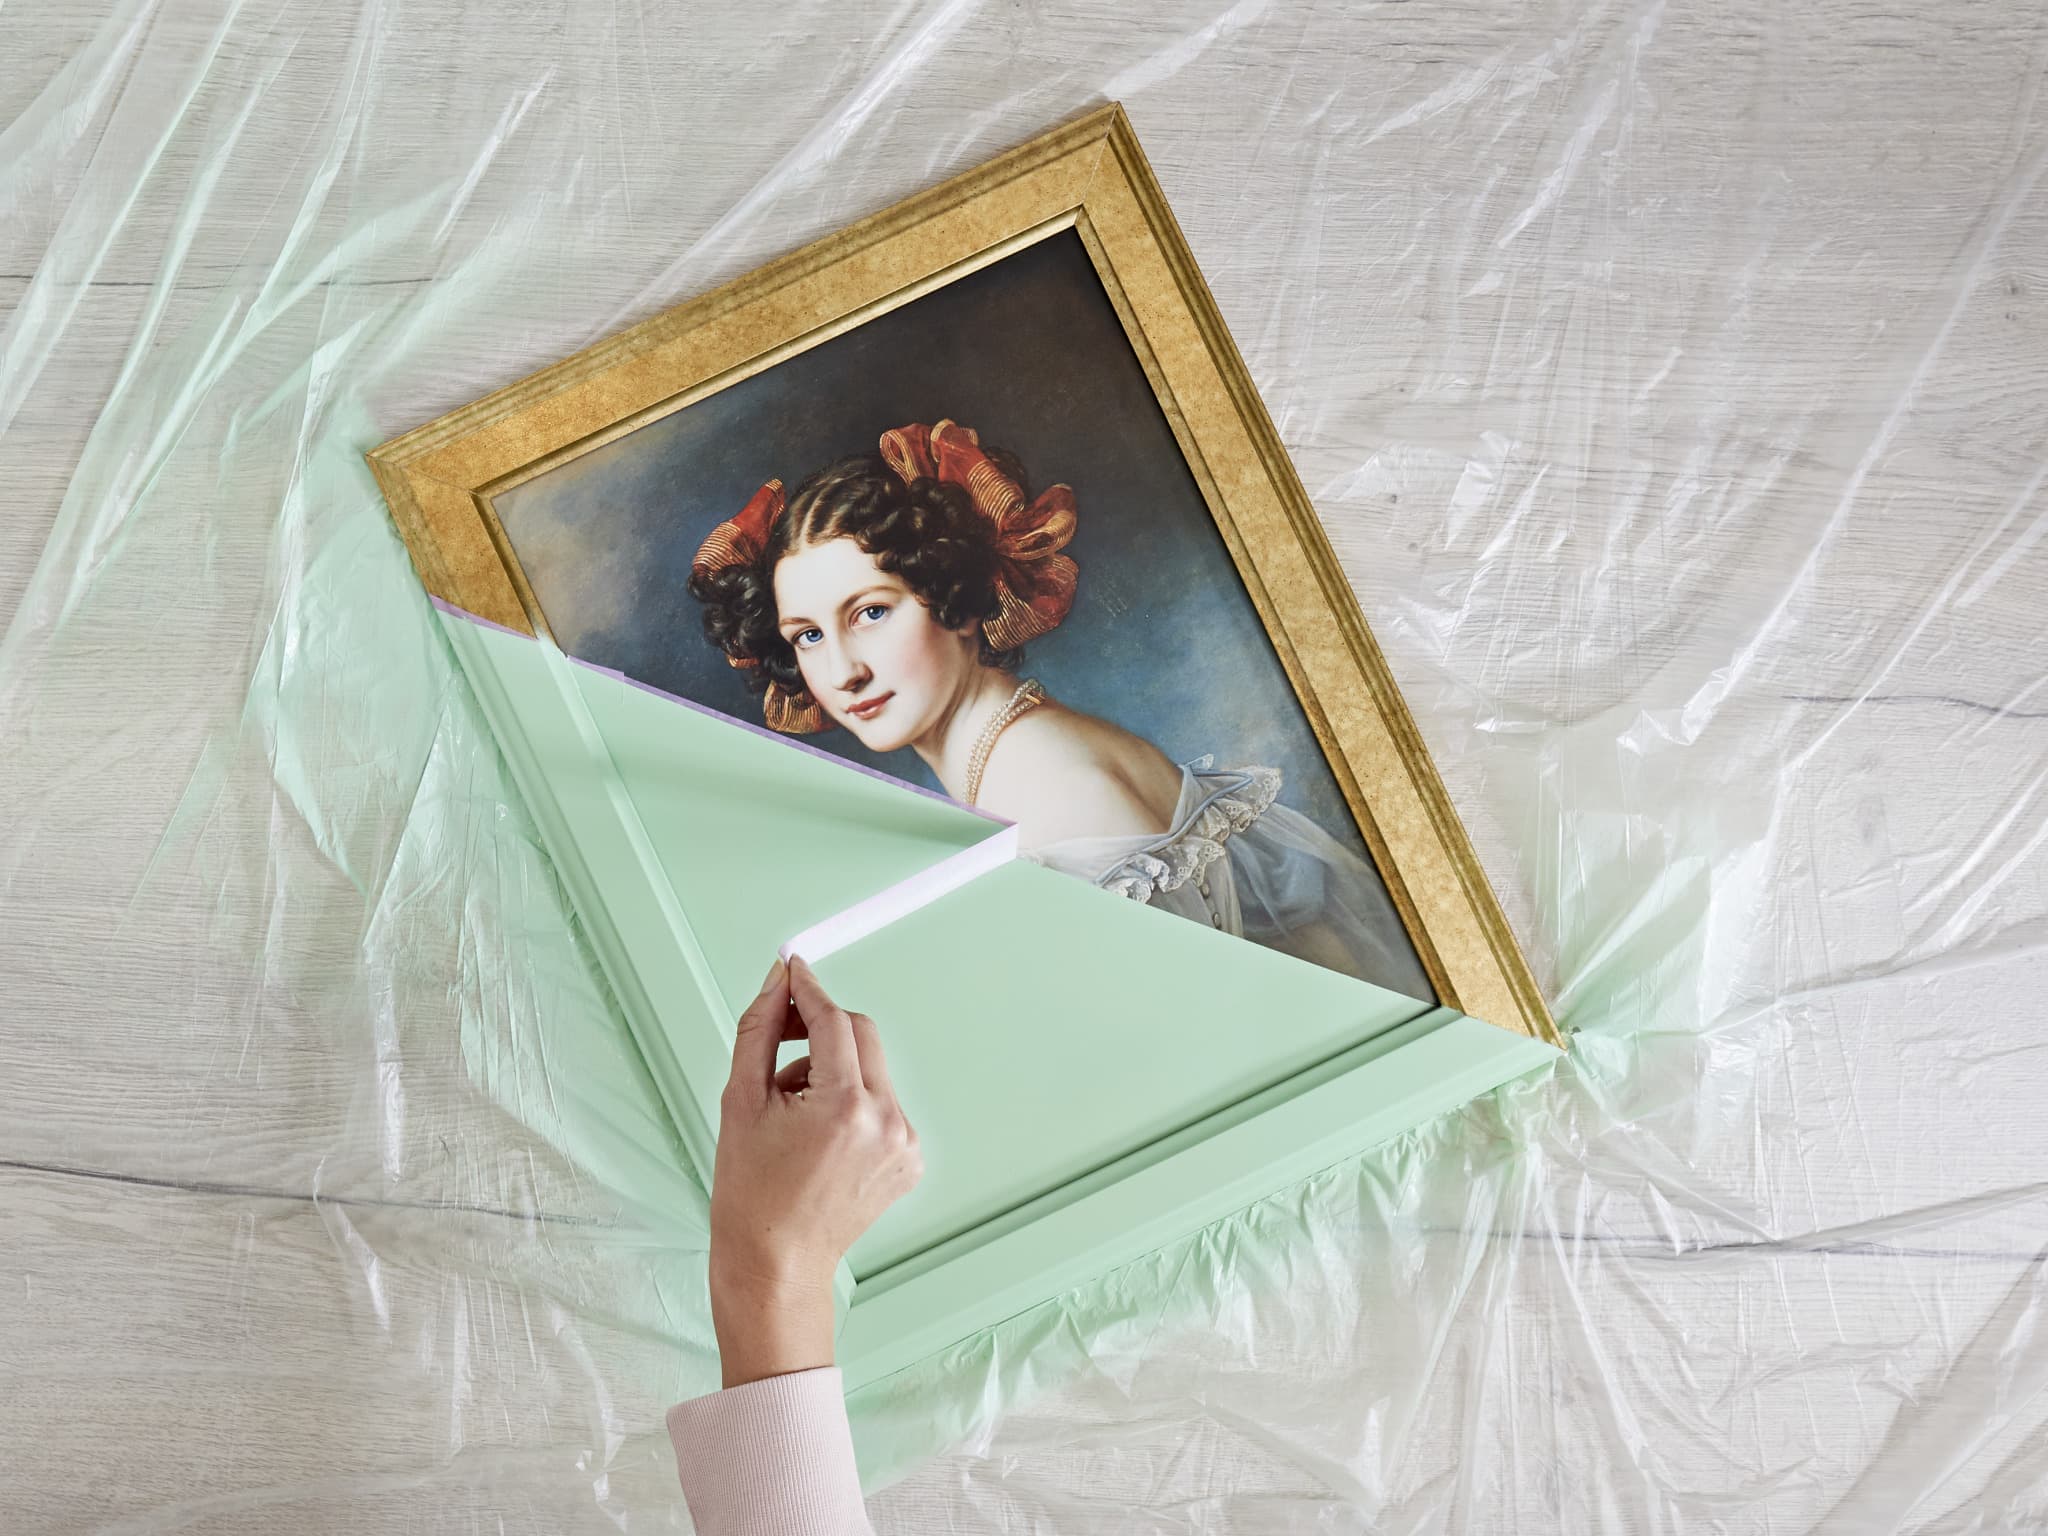 Schönheit bewahren: Eine Person packt vorsichtig ein antikes, gerahmtes Frauenporträt auf einer geschützten Oberfläche aus und bereitet es für den edding 5200 Permanentspray Acryllack Pastell & sanfte Farben vor.